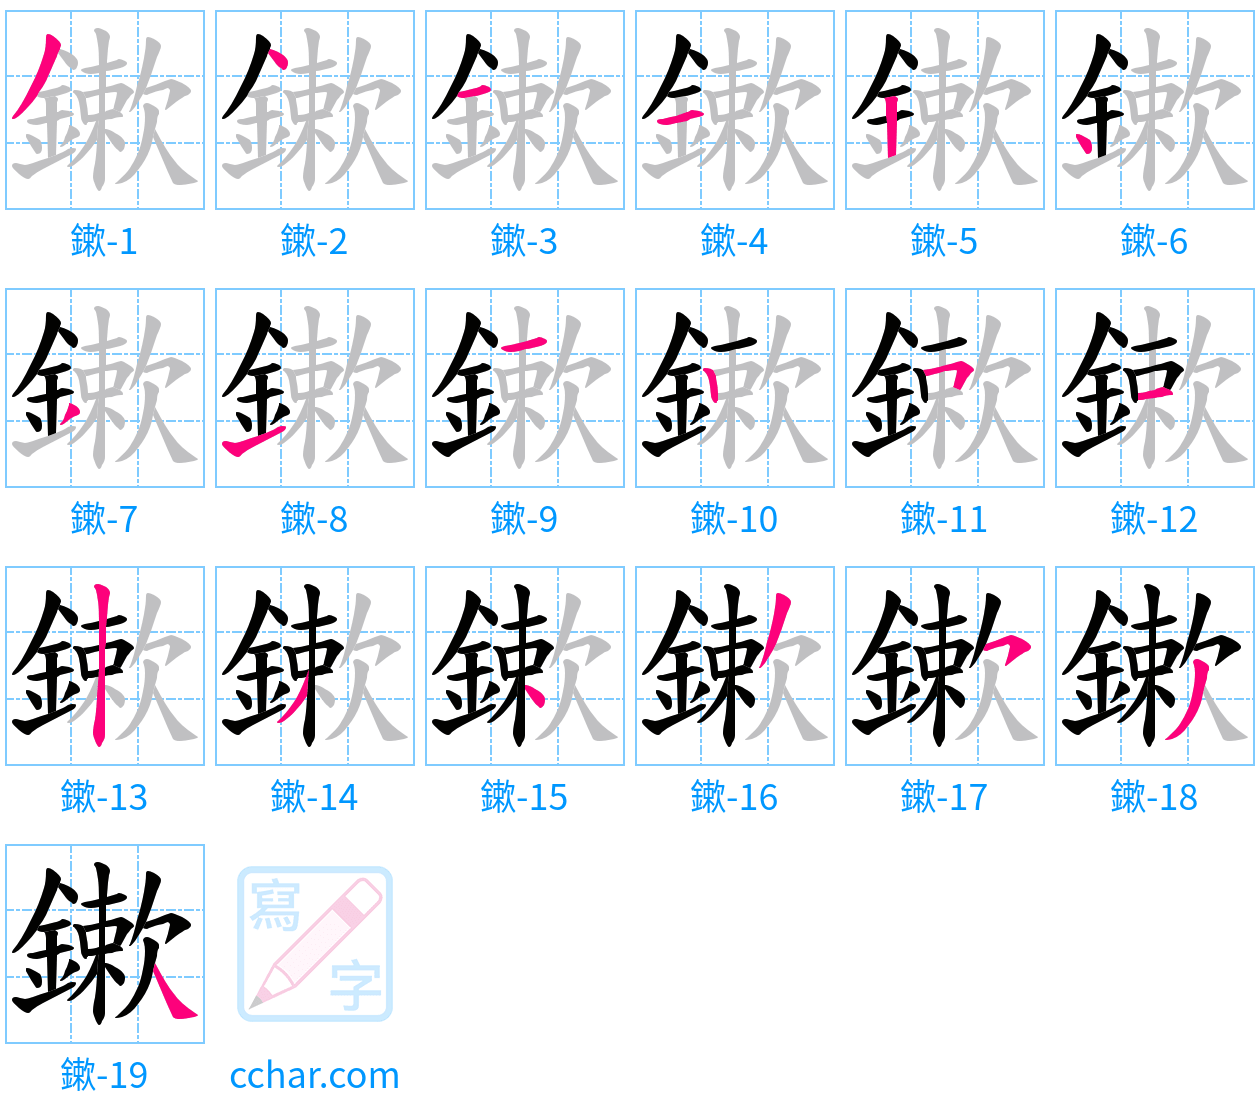 鏉 stroke order step-by-step diagram